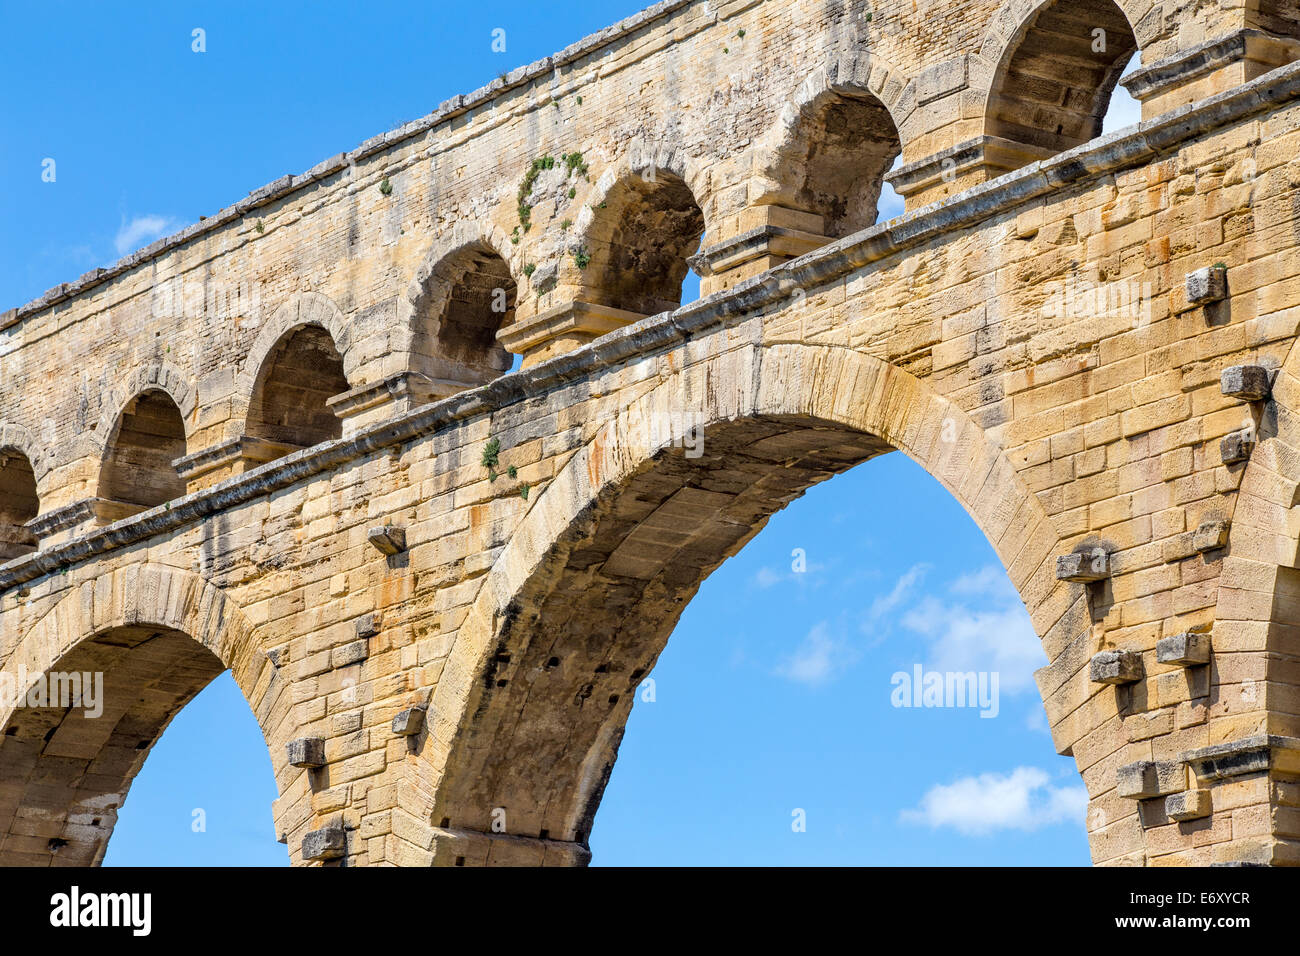 Pont du Gard Roman aqueduct, Gard, Languedoc, France Stock Photo